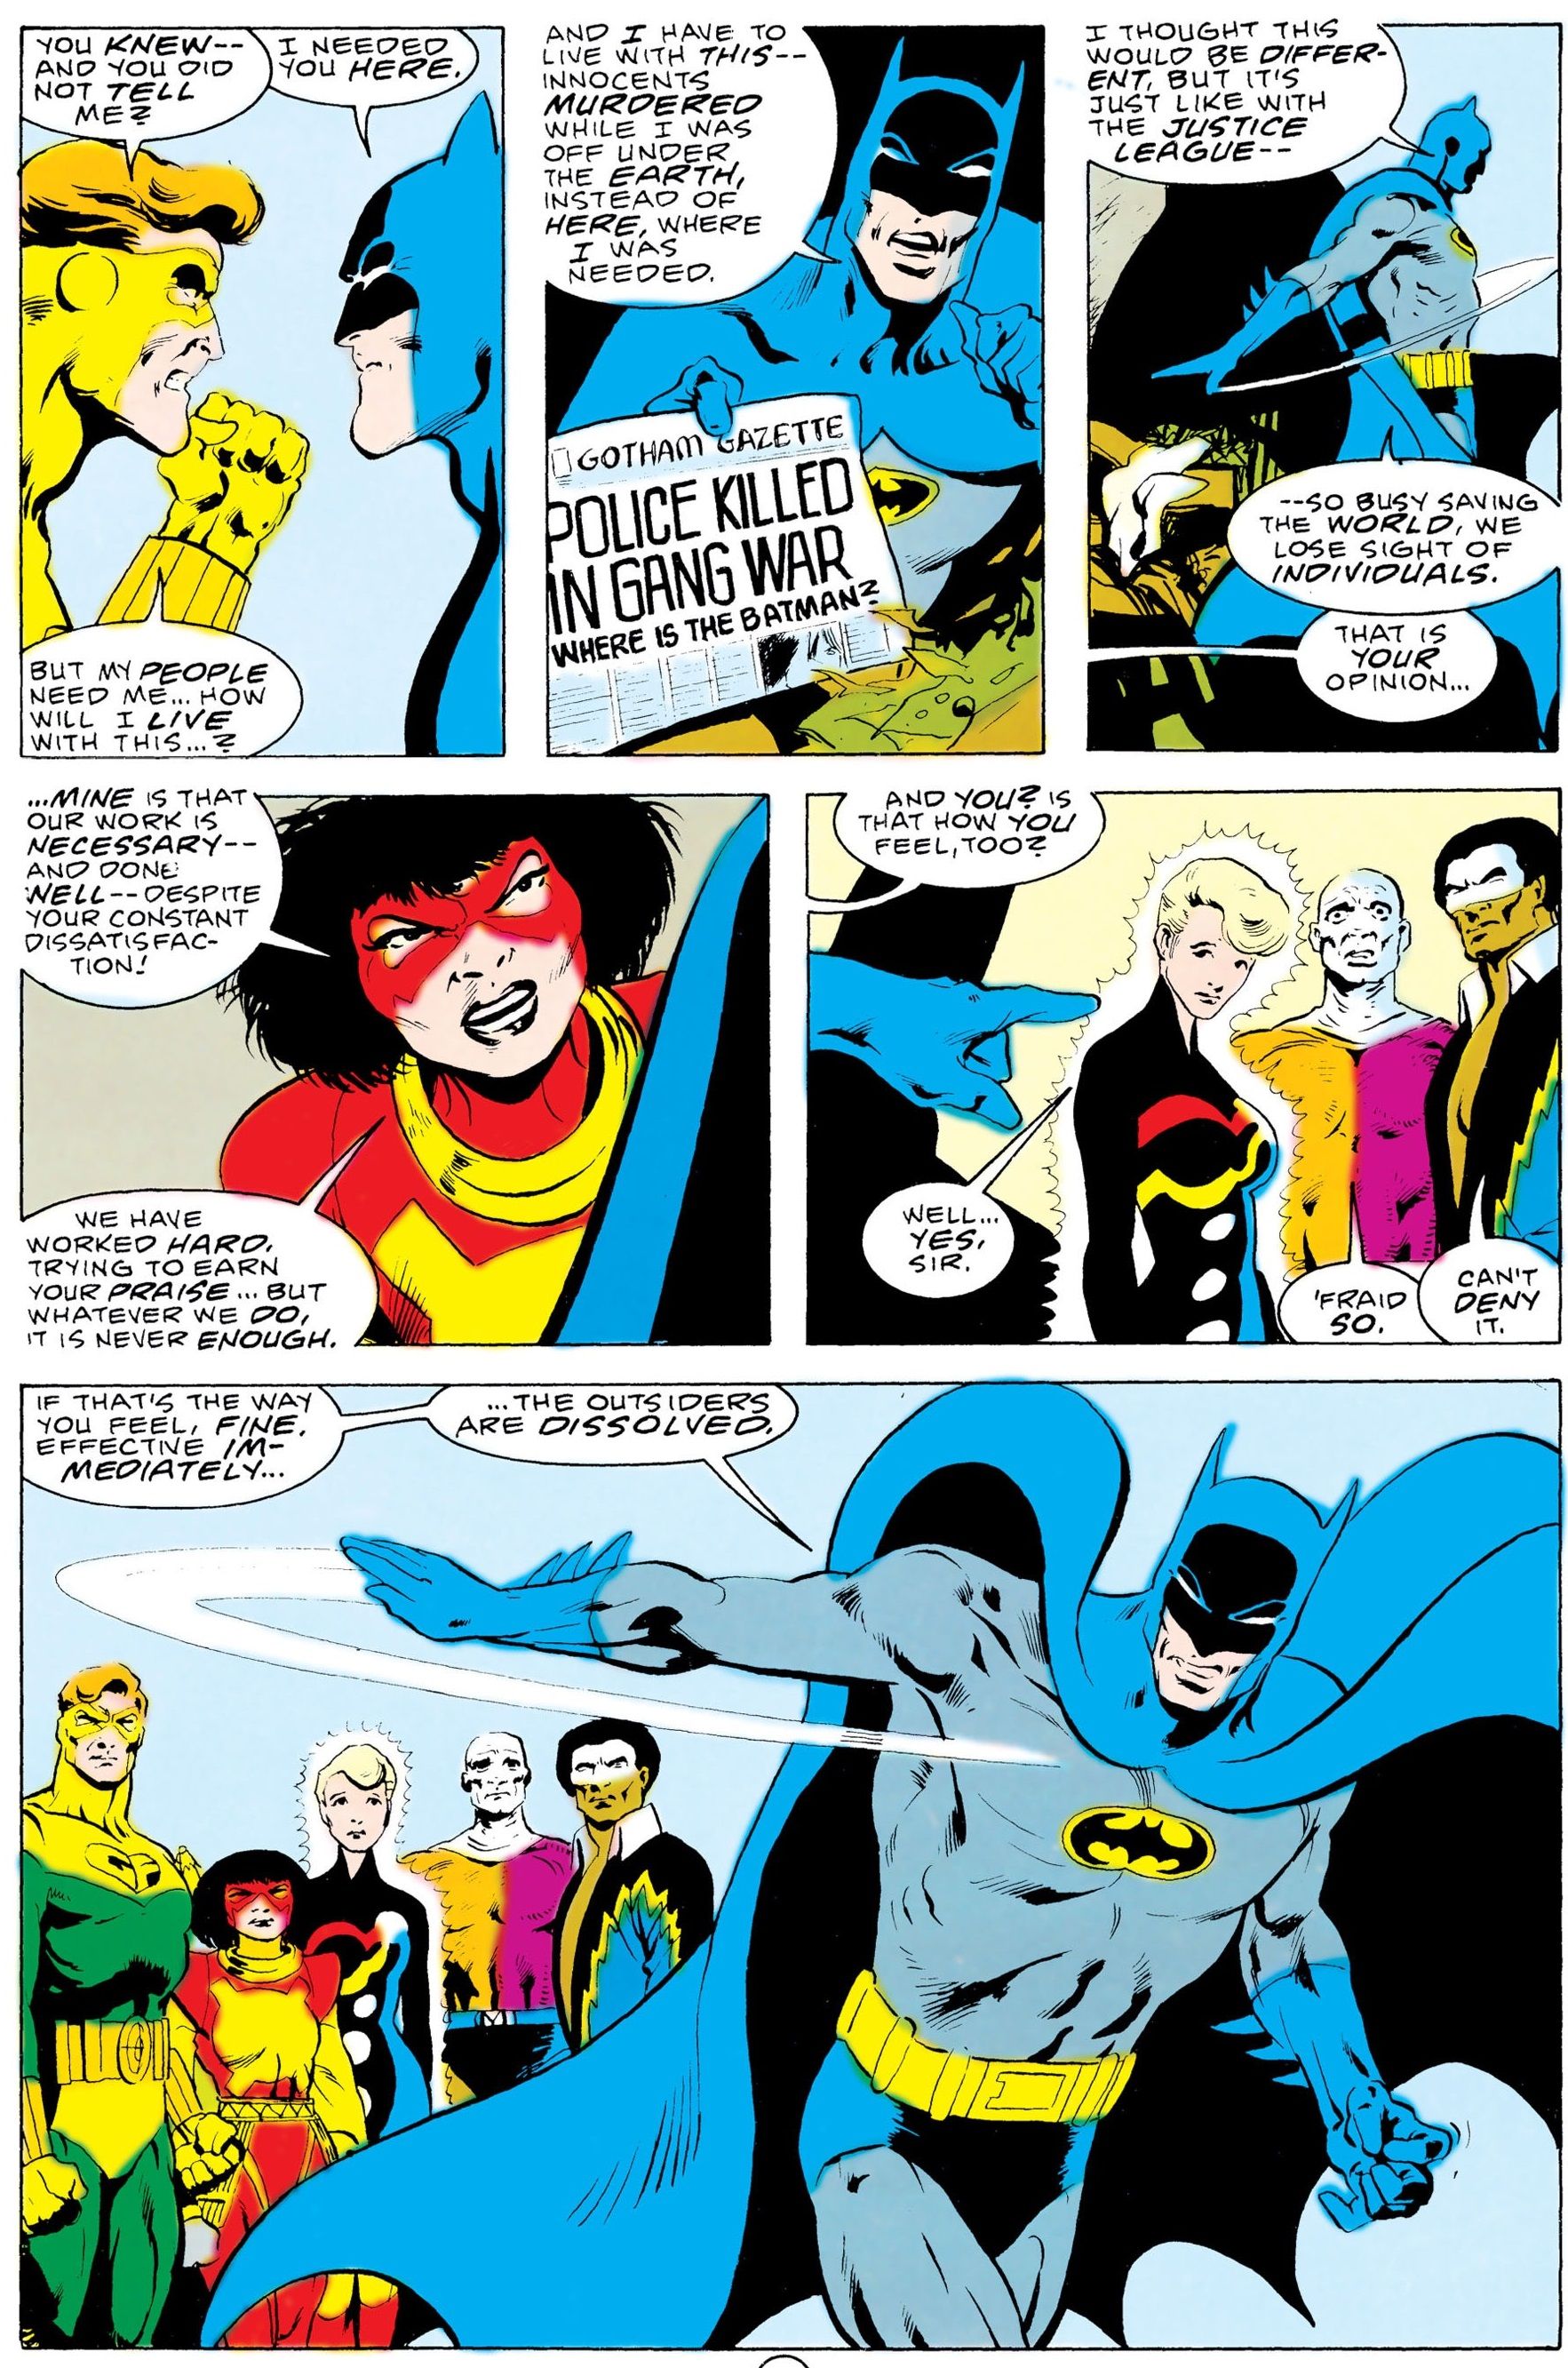 Когда Бэтмен вернулся в Лигу справедливости после того, как ушел из-за чужаков?